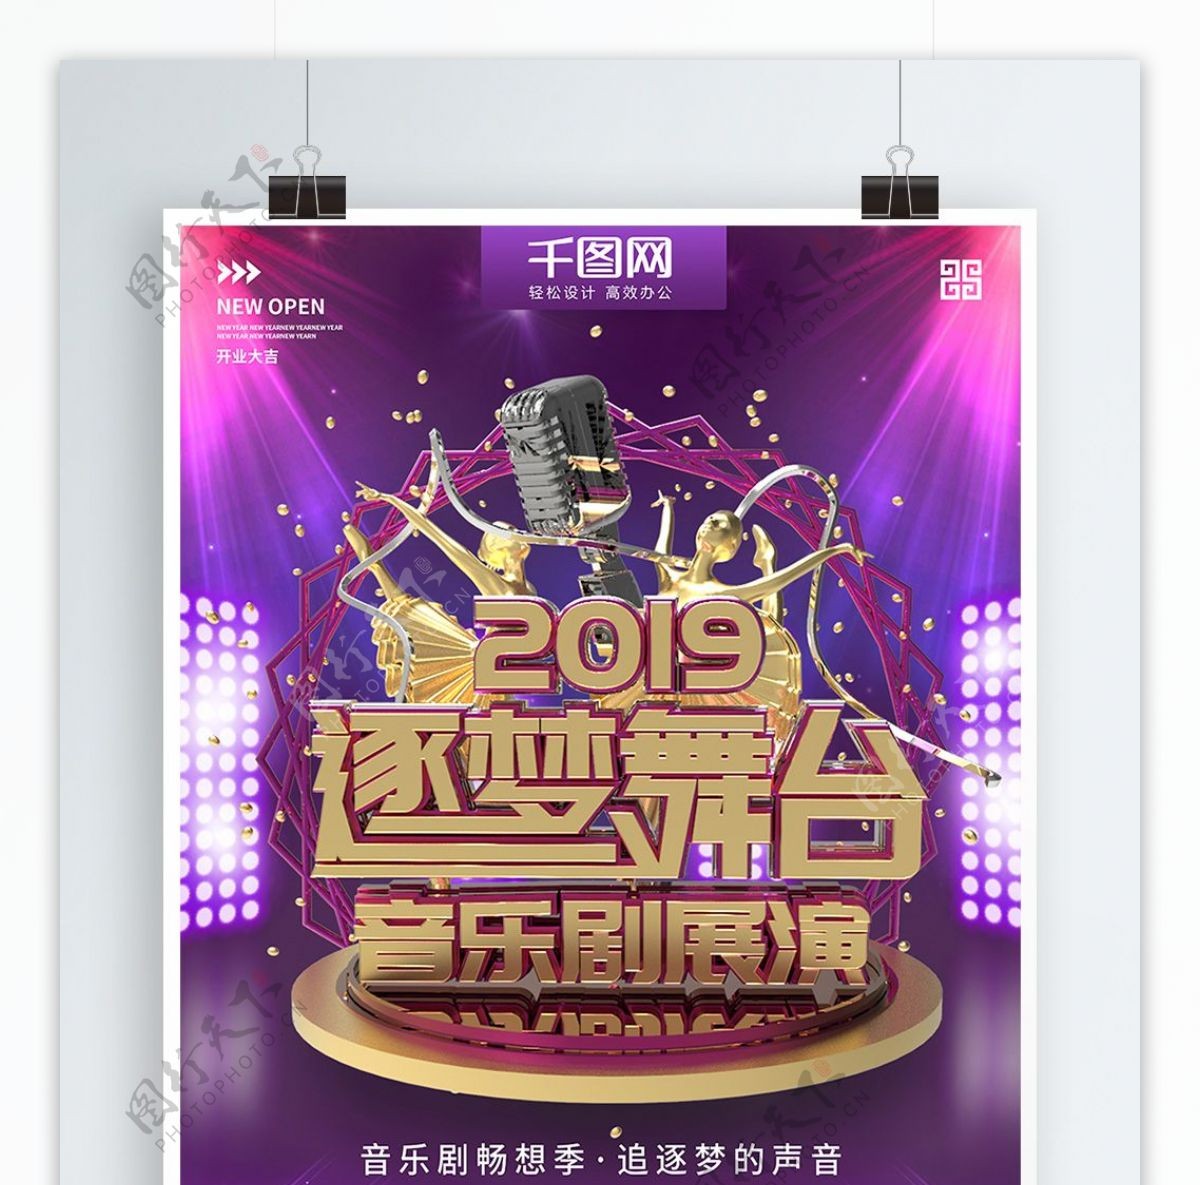 紫色时尚逐梦舞台音乐剧宣传商业海报